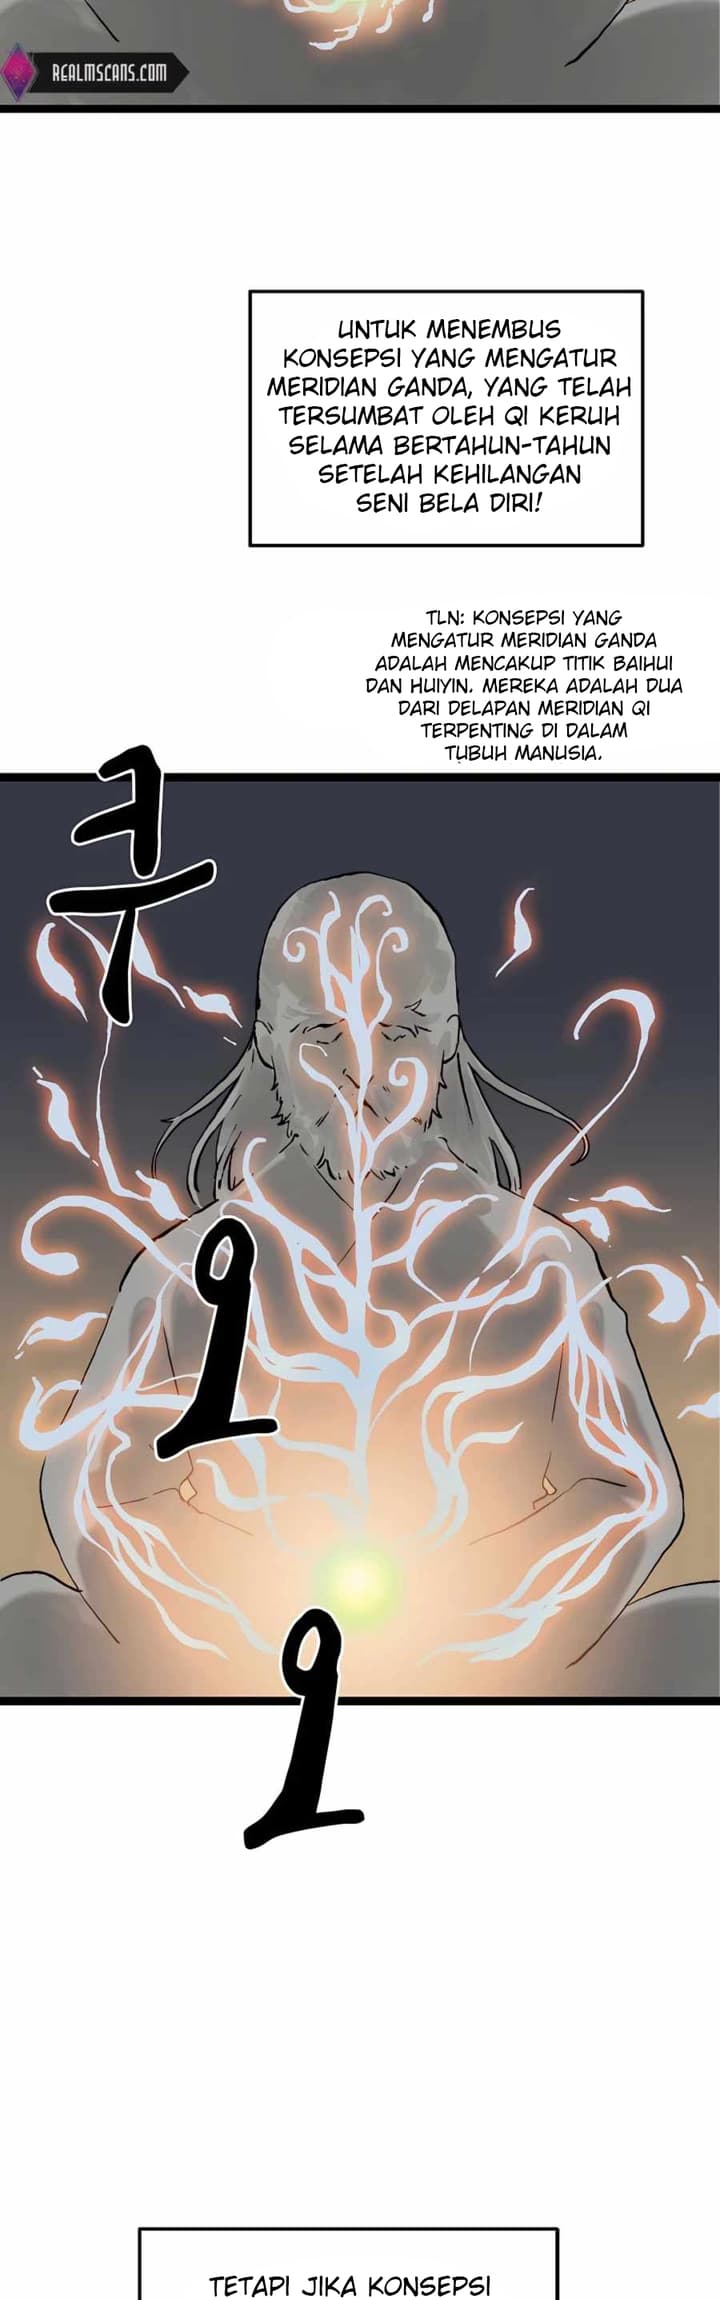 Demonic Master Of Mount Kunlun Chapter 19 - 379